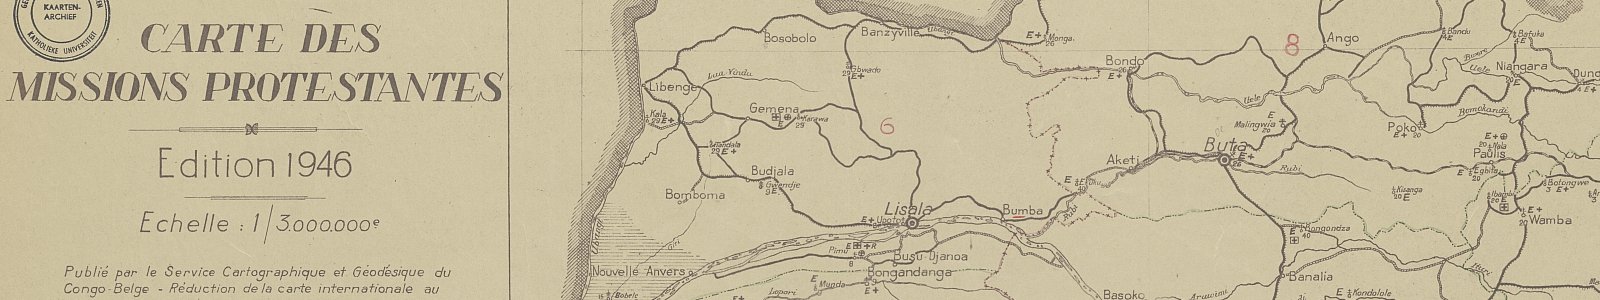 'Congo belge : carte des missions protestantes', 1946